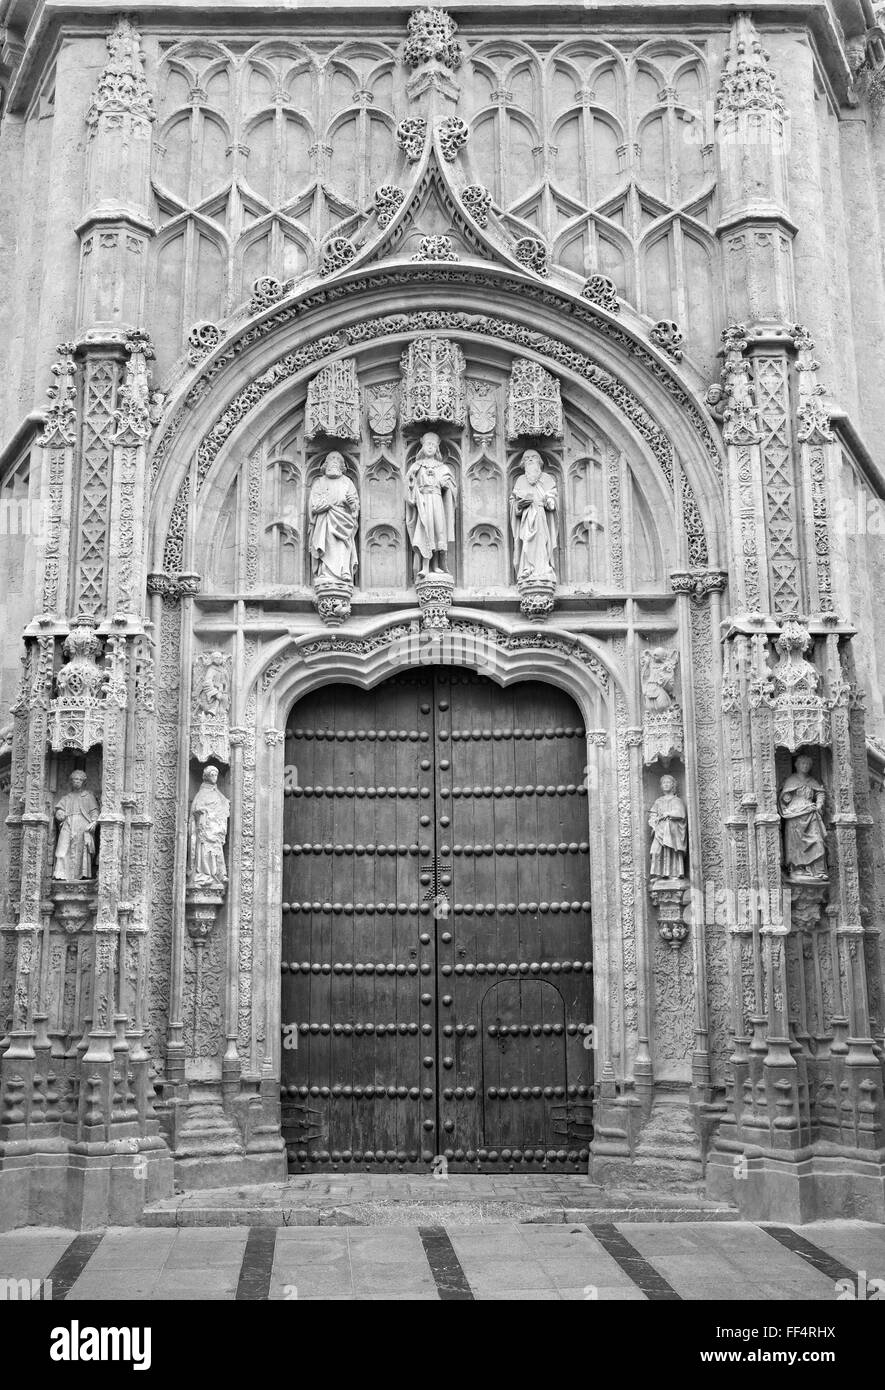 CORDOBA, Spanien - 26. Mai 2015: Das gotische Portal des Royal Hospital gebaut nach einem Entwurf von Hernan Ruiz, el Viejo San Sebastian. Stockfoto